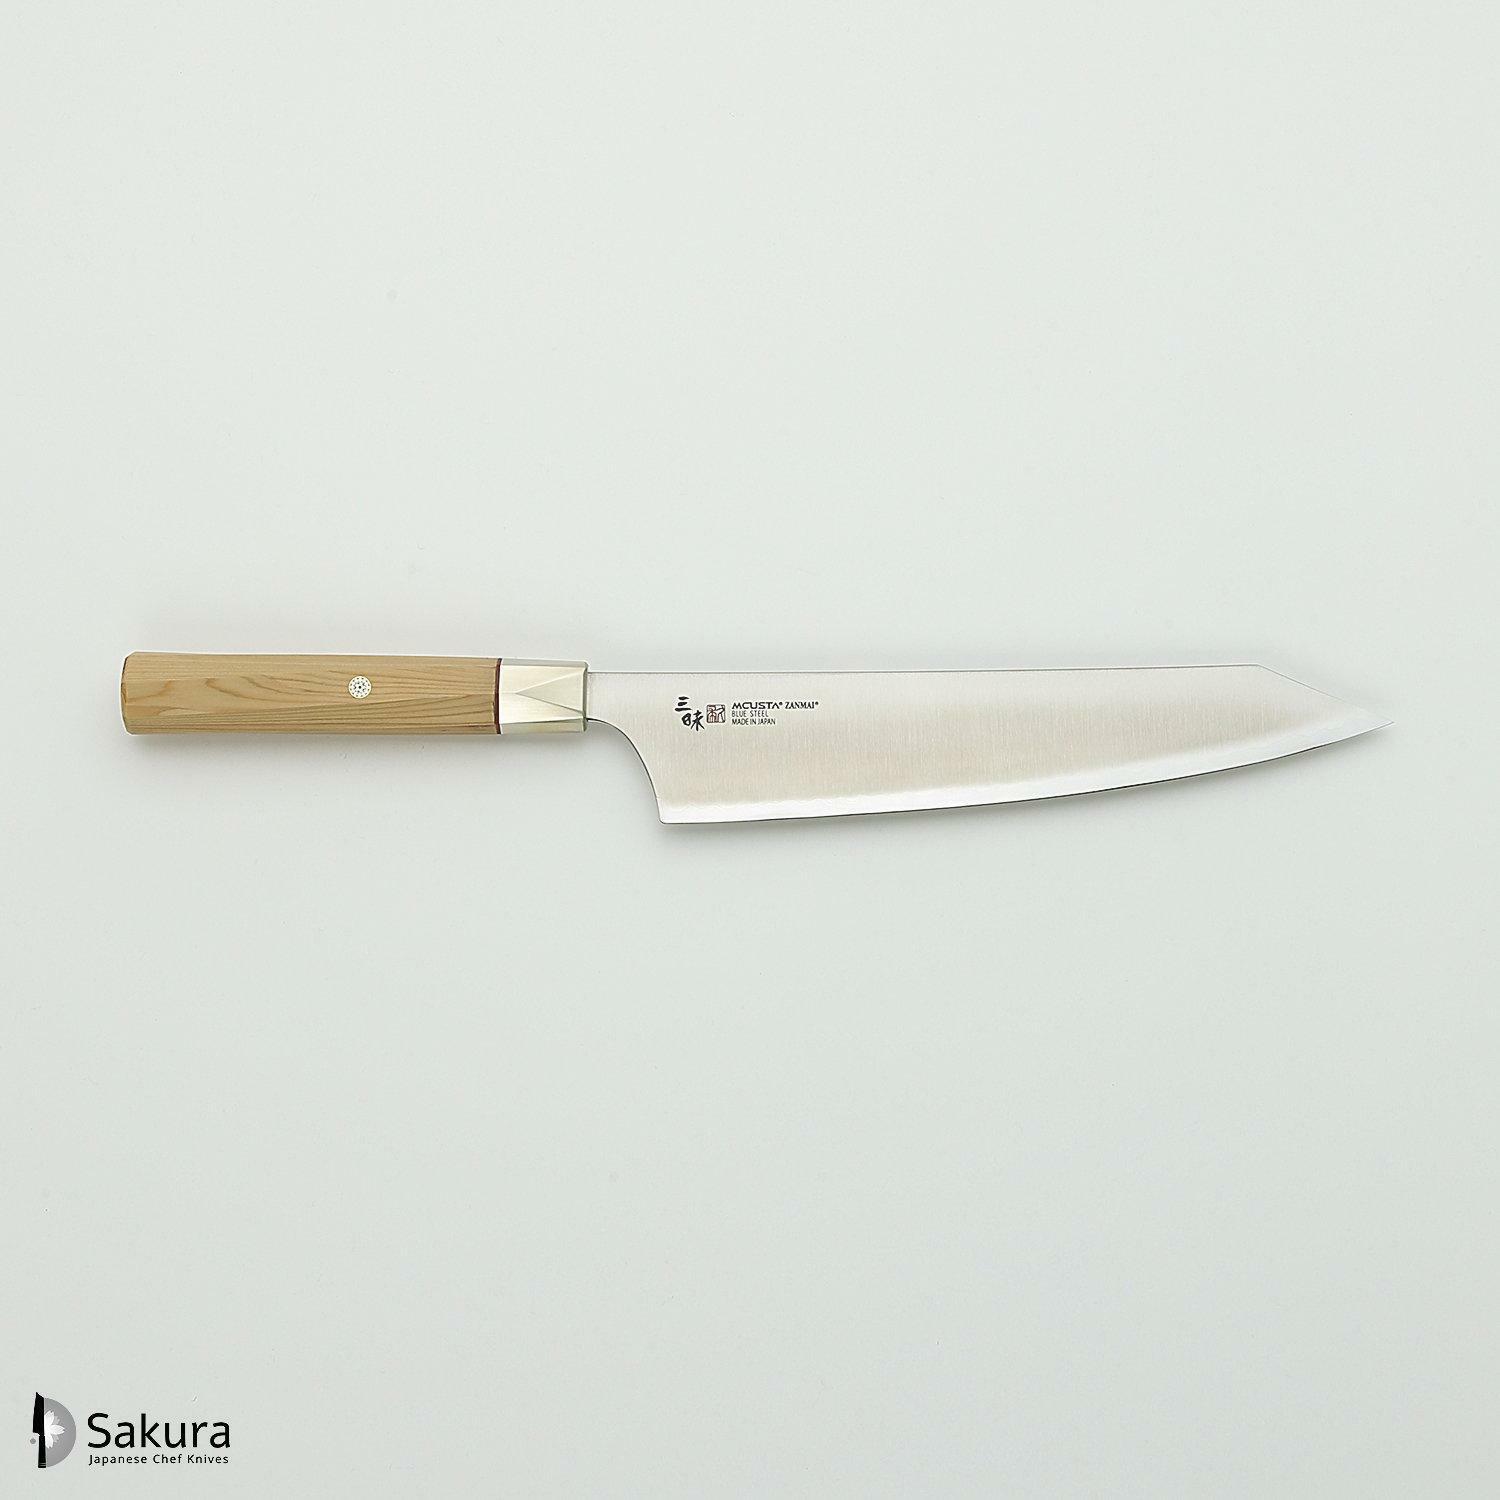 סכין שף רב-תכליתית גִּיוּטוֹ 210מ״מ מחושלת בעבודת יד 3 שכבות: פלדת פחמן יפנית מתקדמת מסוג Aogami Super עטופה פלדת אל-חלד גימור מט מלוטש מקוסטה זאנמאיי יפן ZBX-5005B